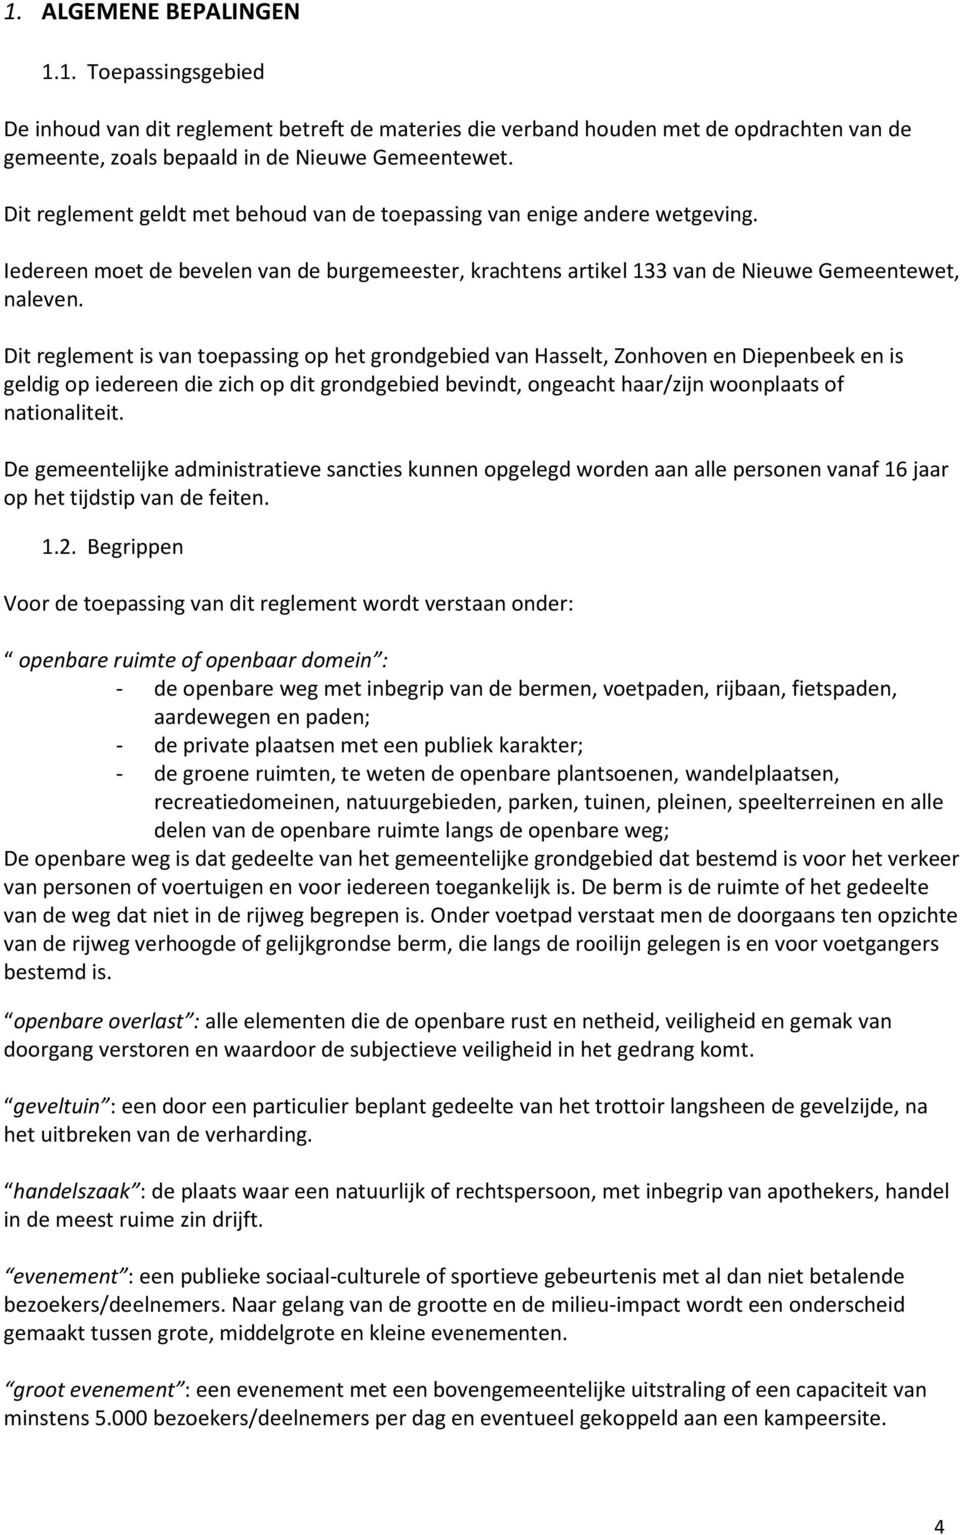 Dit reglement is van toepassing op het grondgebied van Hasselt, Zonhoven en Diepenbeek en is geldig op iedereen die zich op dit grondgebied bevindt, ongeacht haar/zijn woonplaats of nationaliteit.